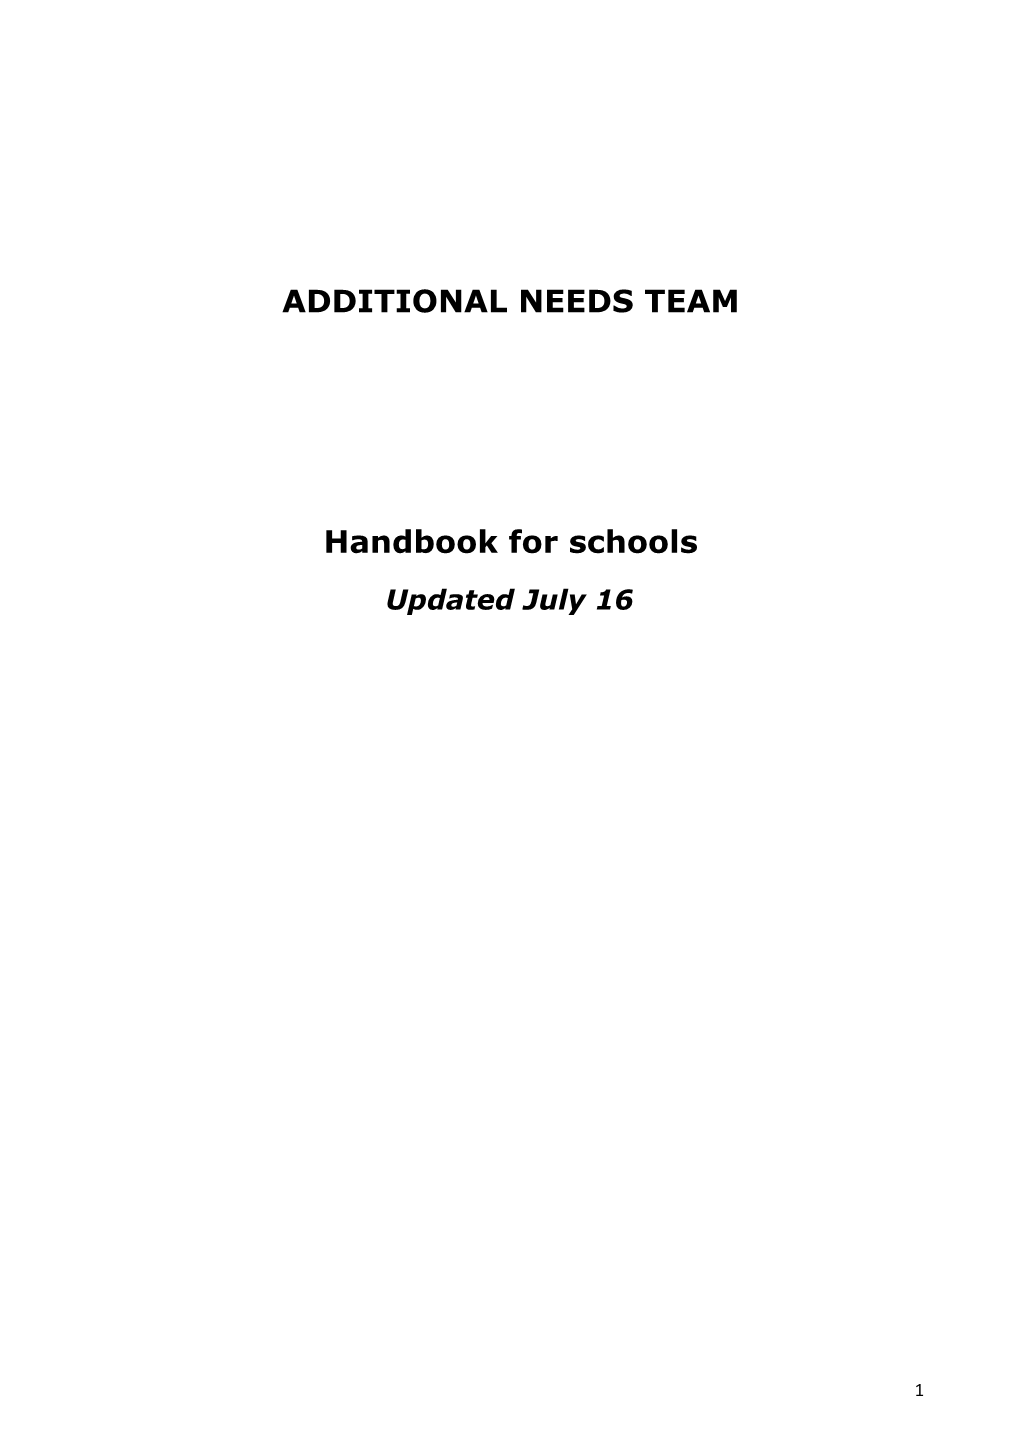 Additional Needs Team